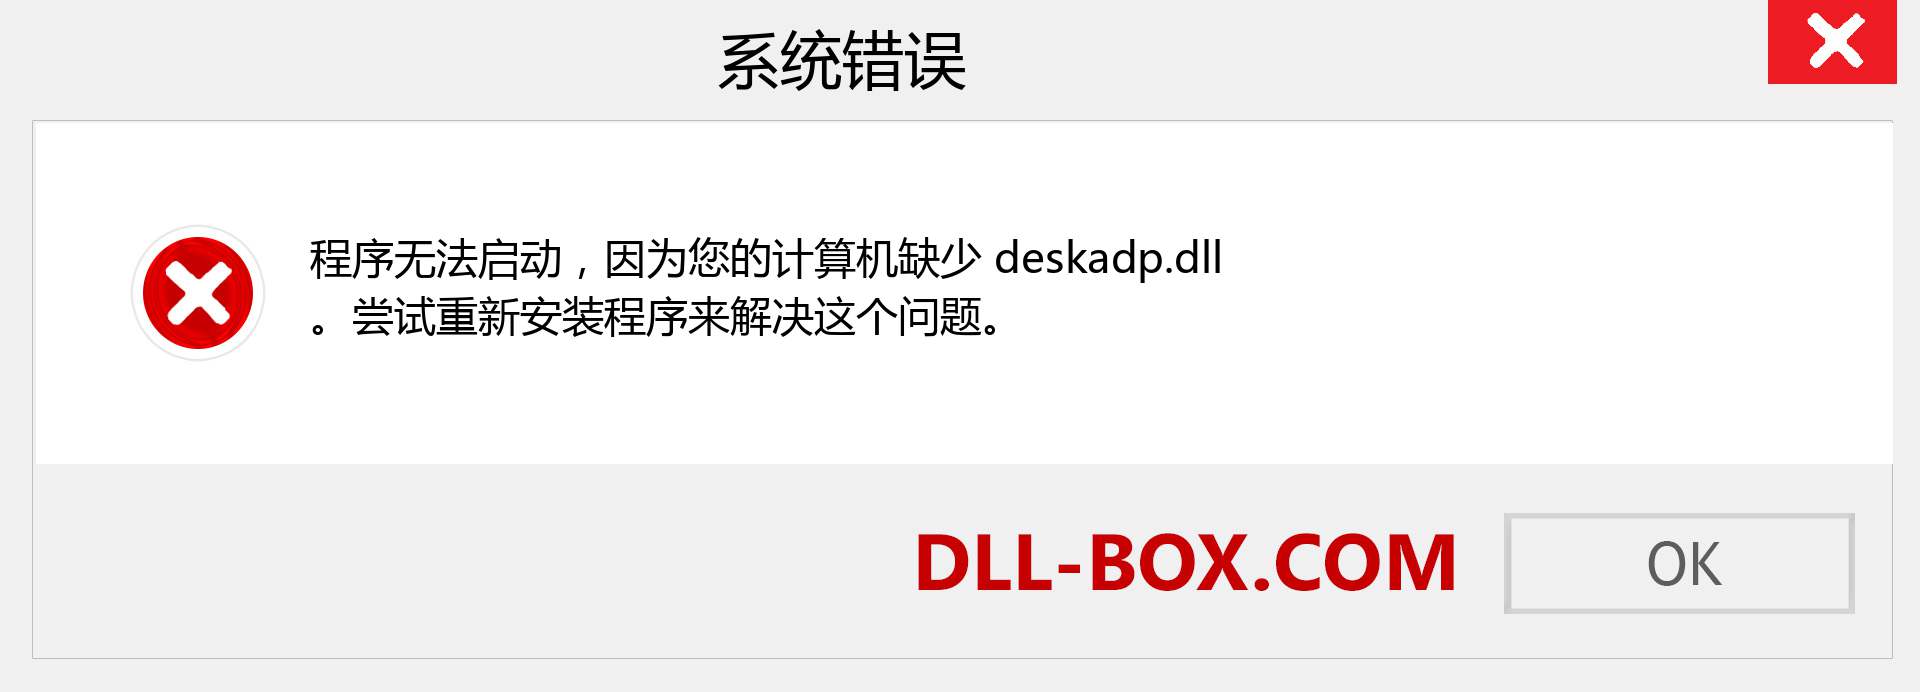 deskadp.dll 文件丢失？。 适用于 Windows 7、8、10 的下载 - 修复 Windows、照片、图像上的 deskadp dll 丢失错误